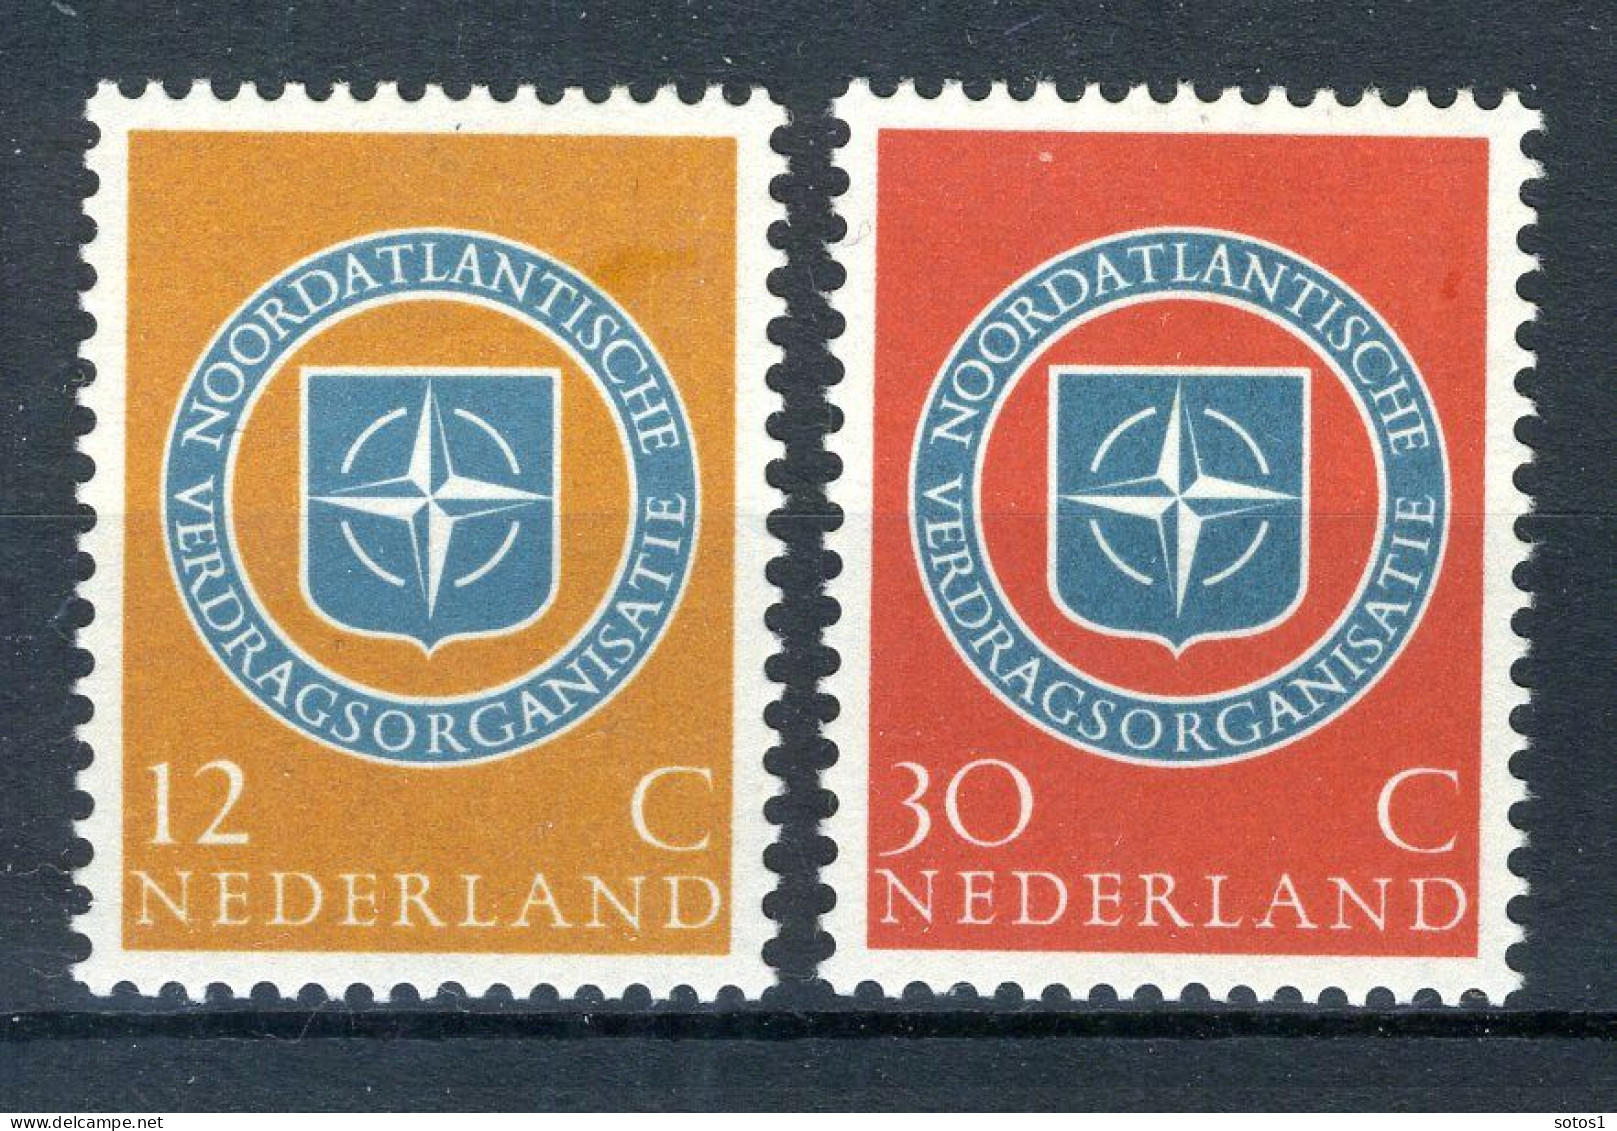 NEDERLAND V1727 Gestempeld 1997 - Nederland Waterland - Gebraucht